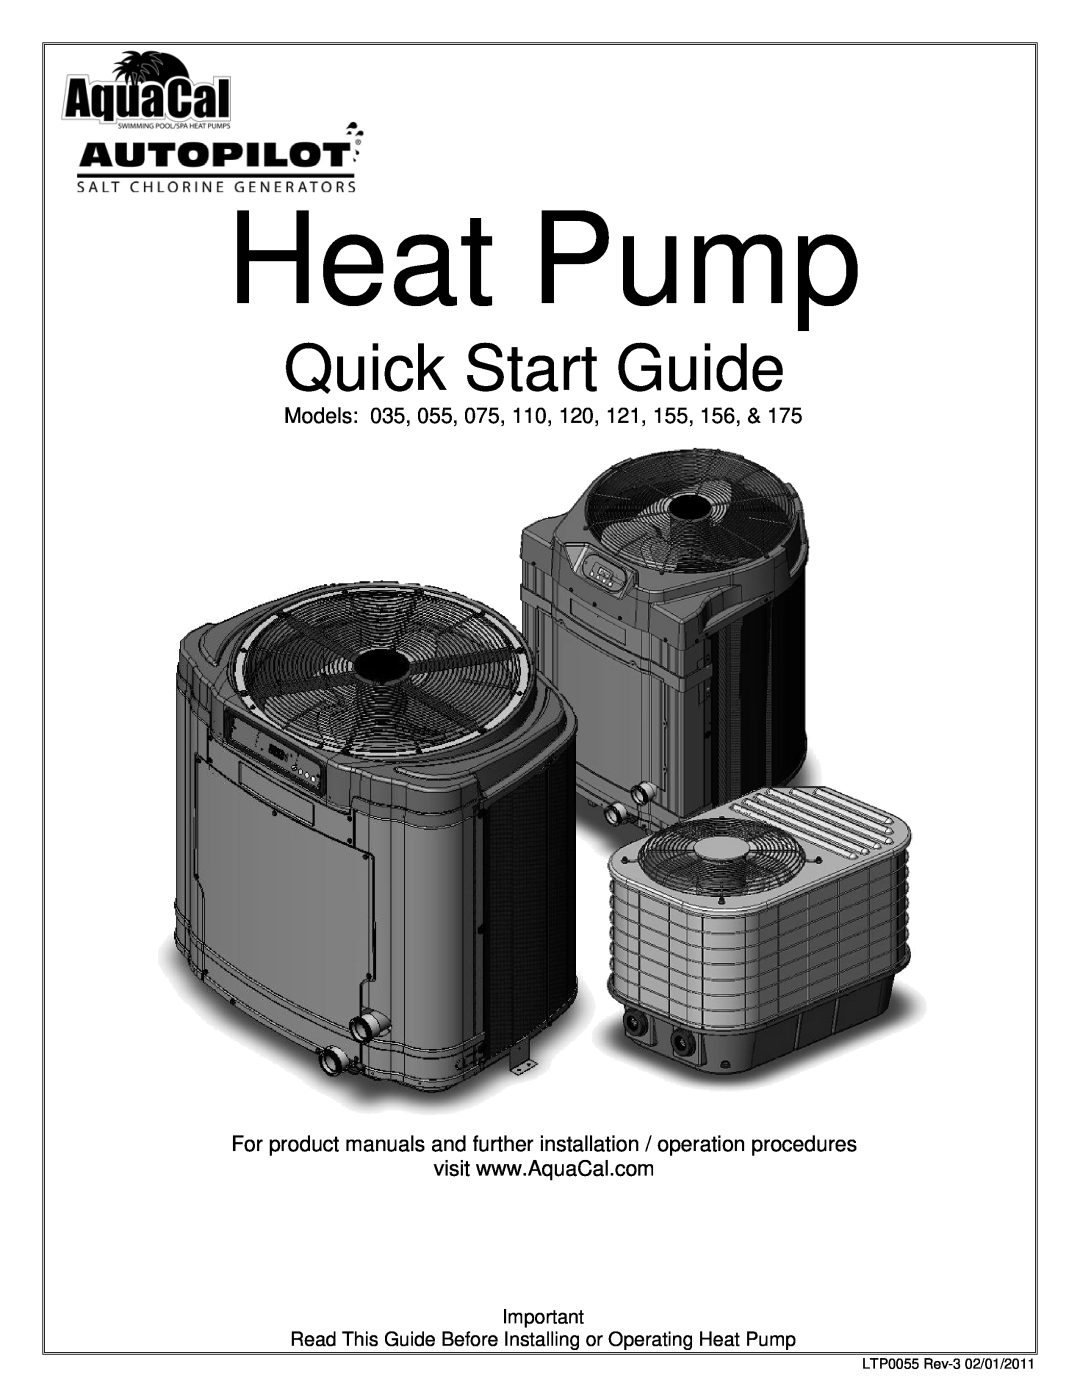 Aquacal 35, 175, 55 quick start Heat Pump, Quick Start Guide 